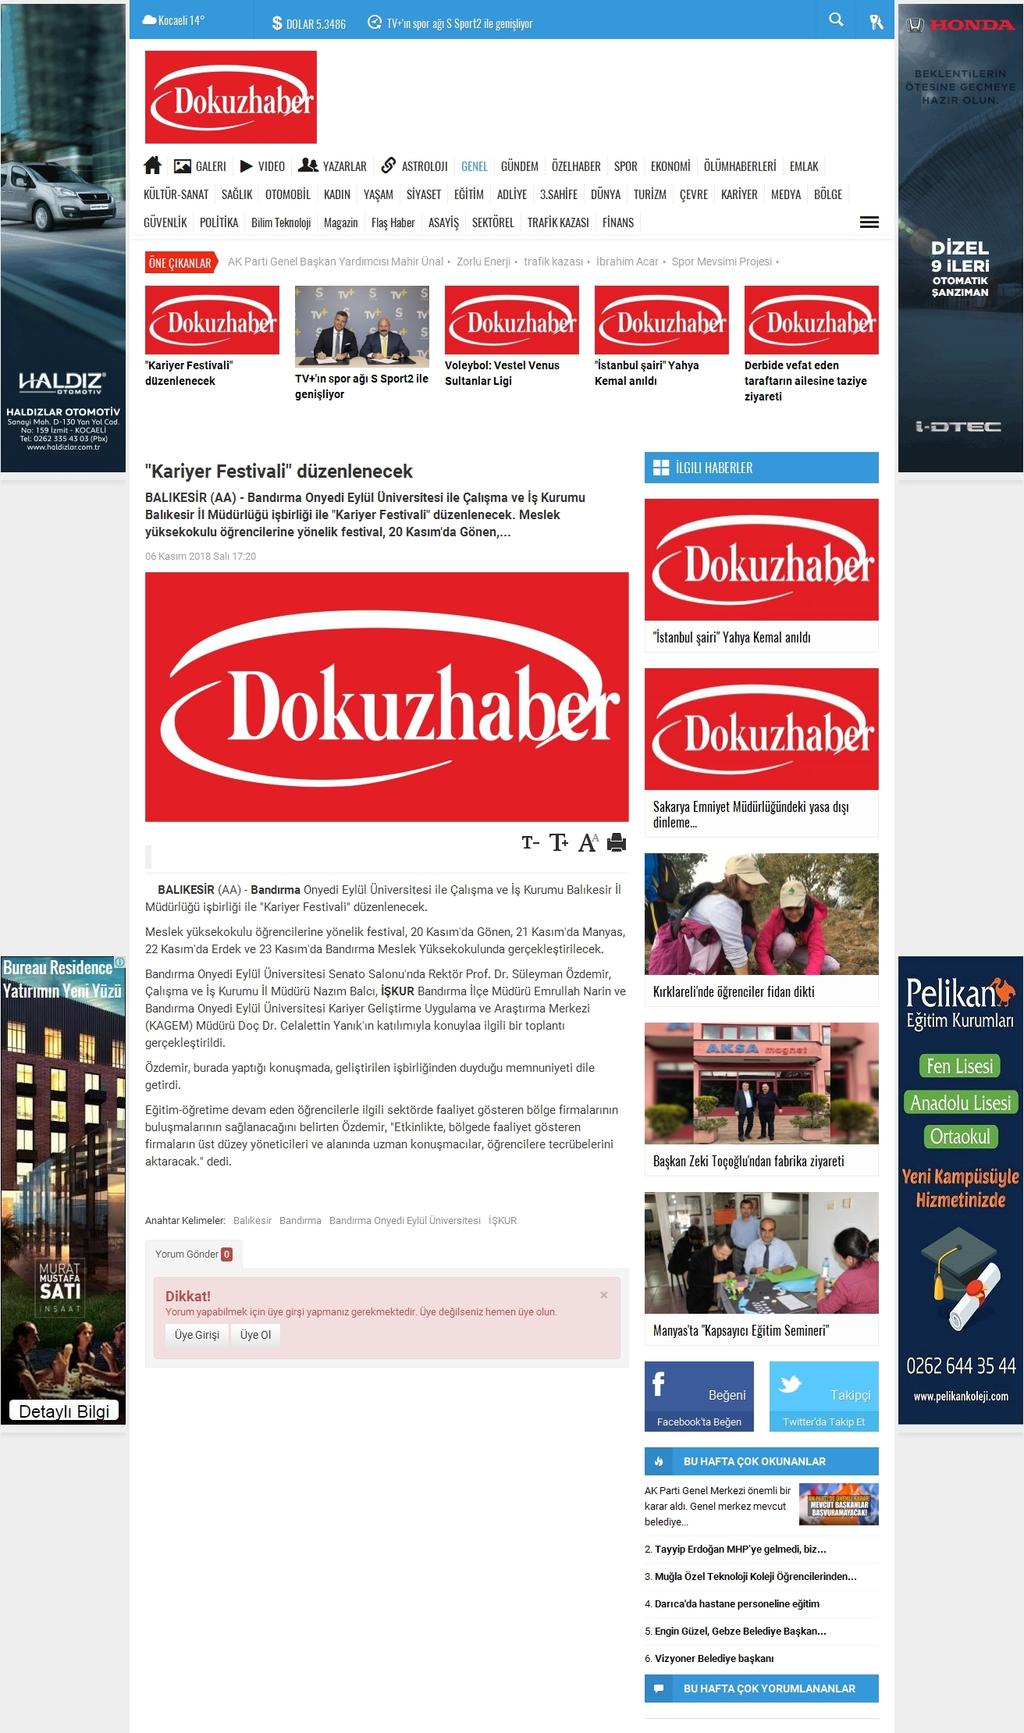 'KARIYER FESTIVALI' DÜZENLENECEK Portal Adres : www.dokuzhaber.